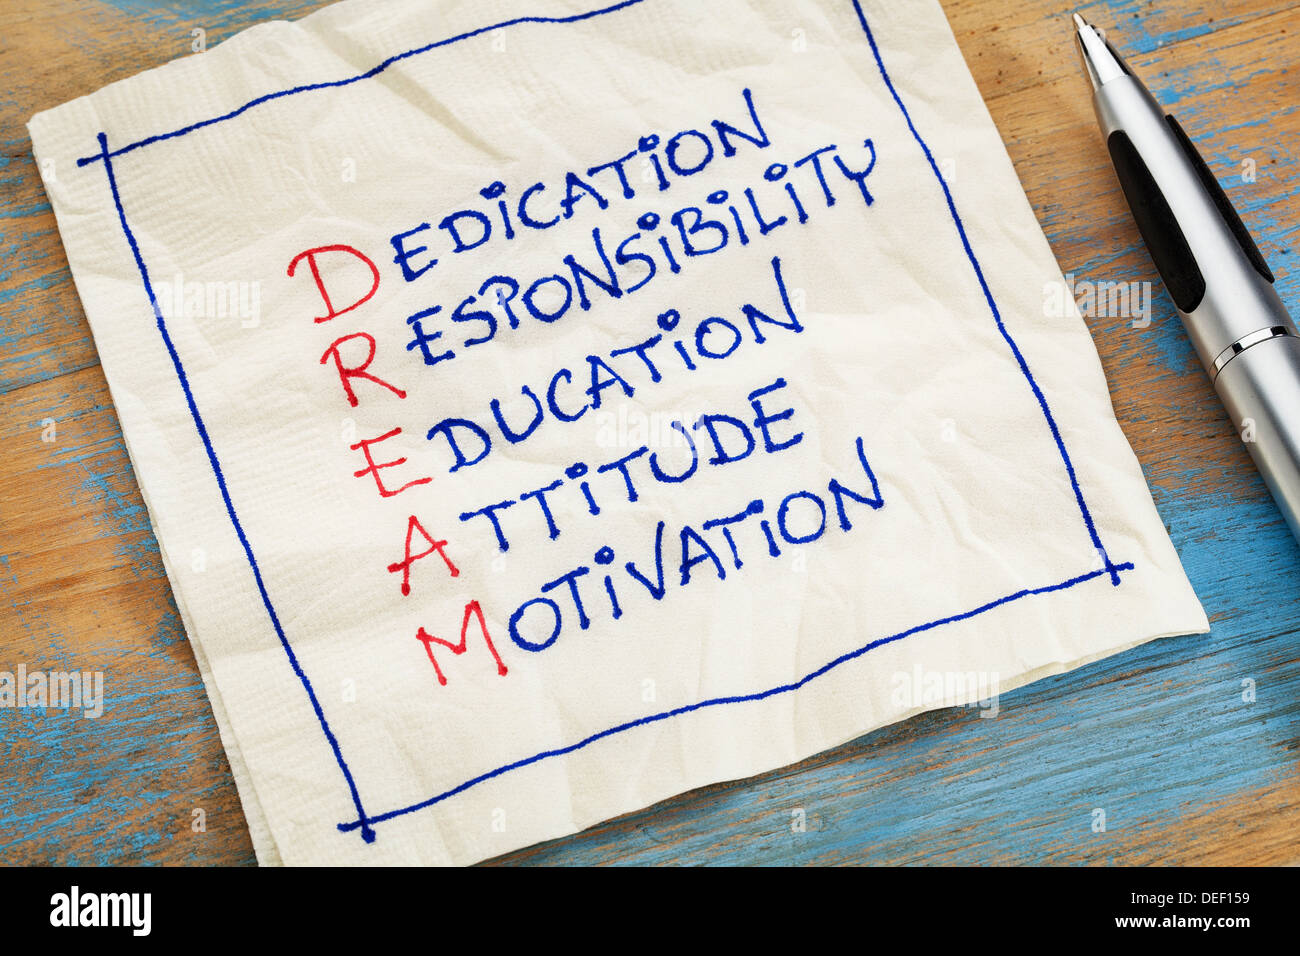 Le dévouement, la responsabilité, l'éducation, l'attitude, la motivation - acronyme de rêve - une serviette de doodle Banque D'Images